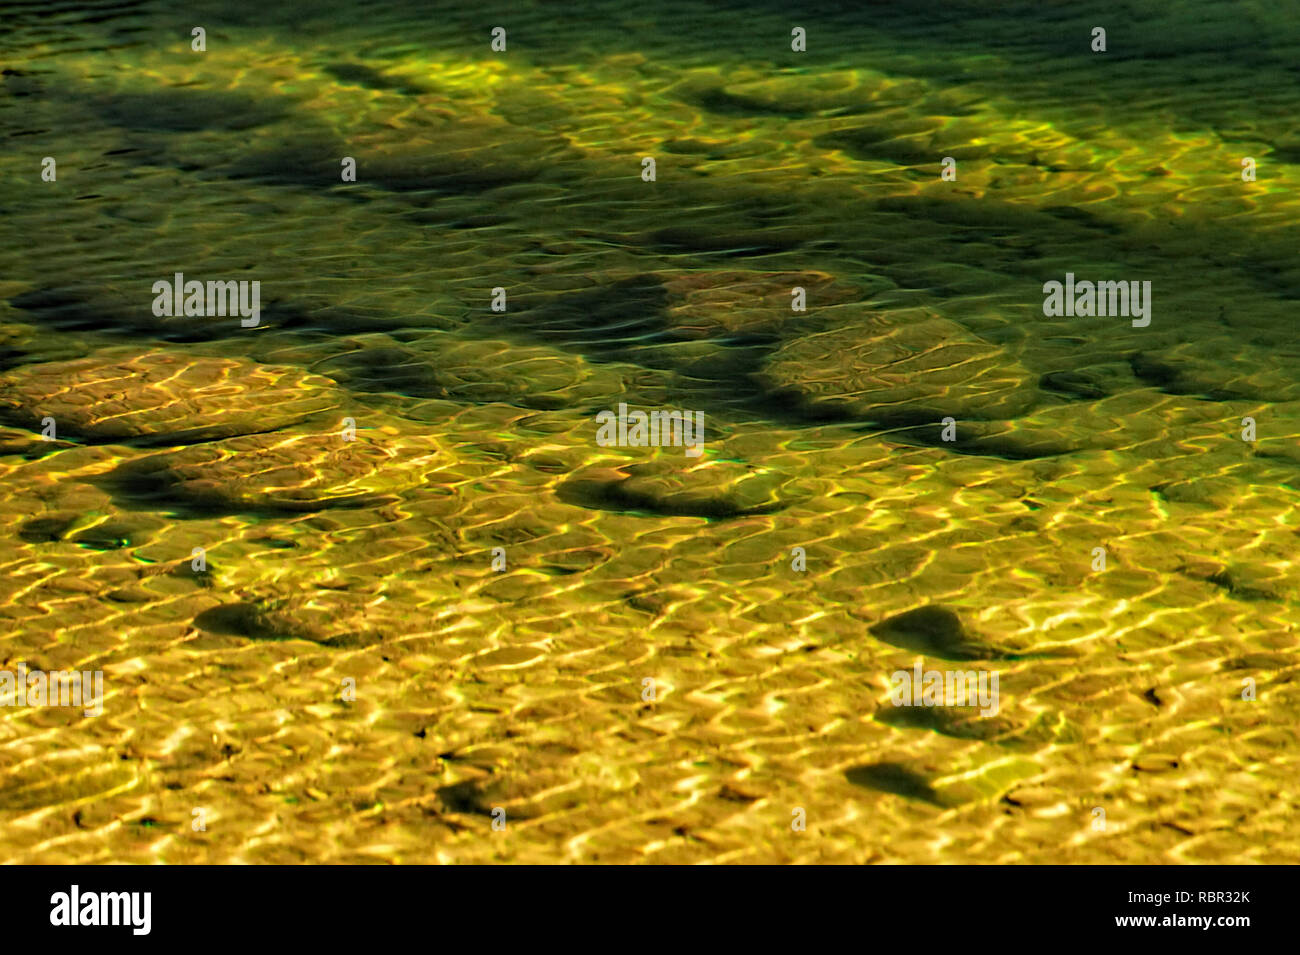 Close up of rocks en vertu de l'ondulation de l'eau dans un lit de rivière. Banque D'Images